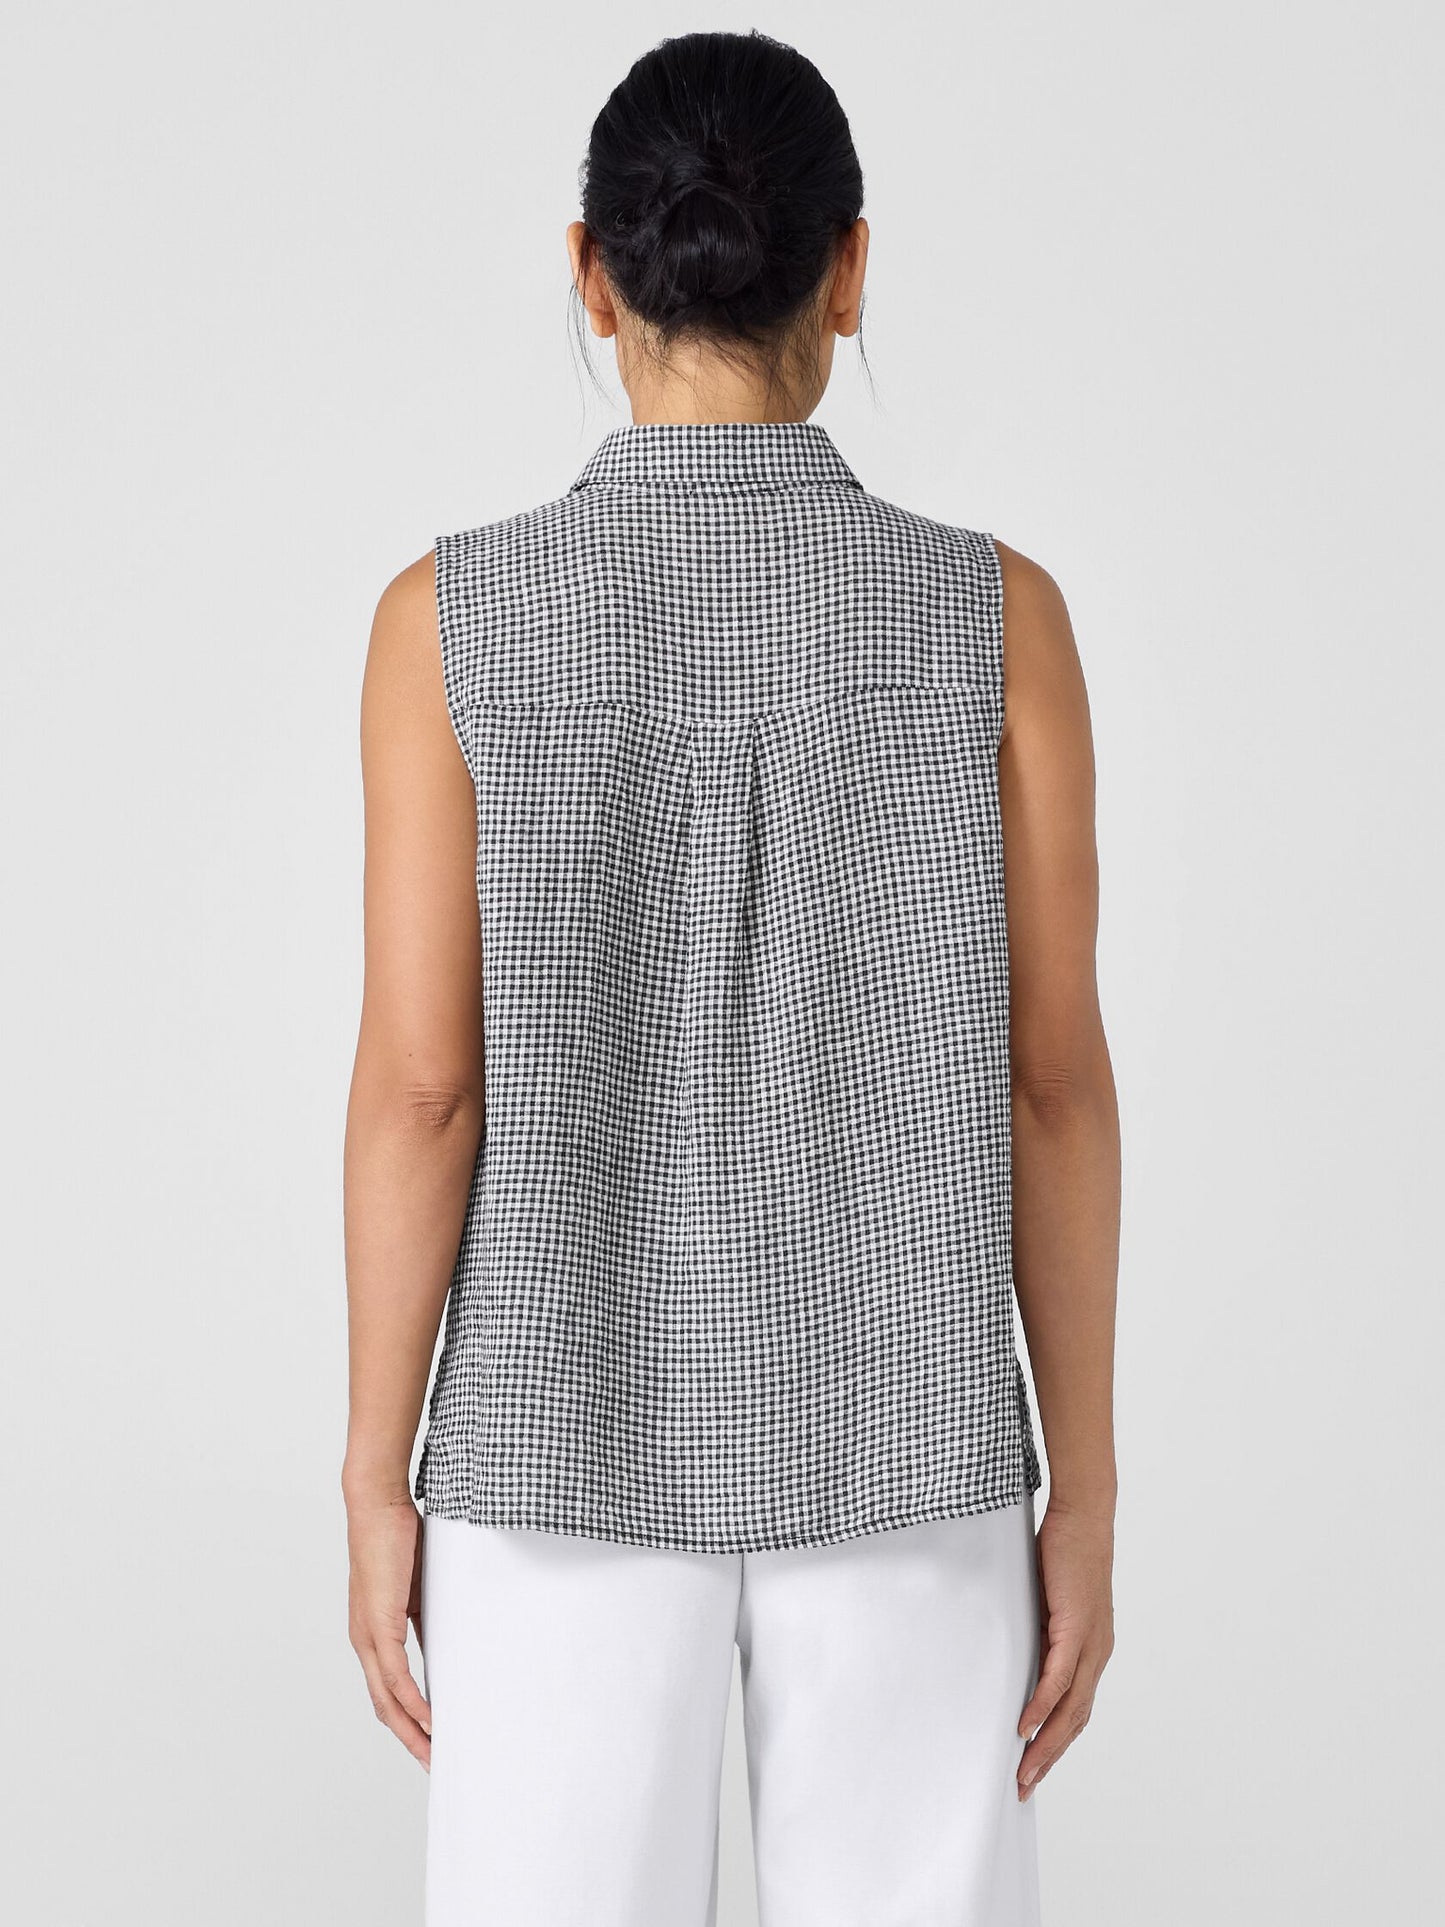 Eileen Fisher Puckered Organic Linen Sleeveless Gingham Shirt